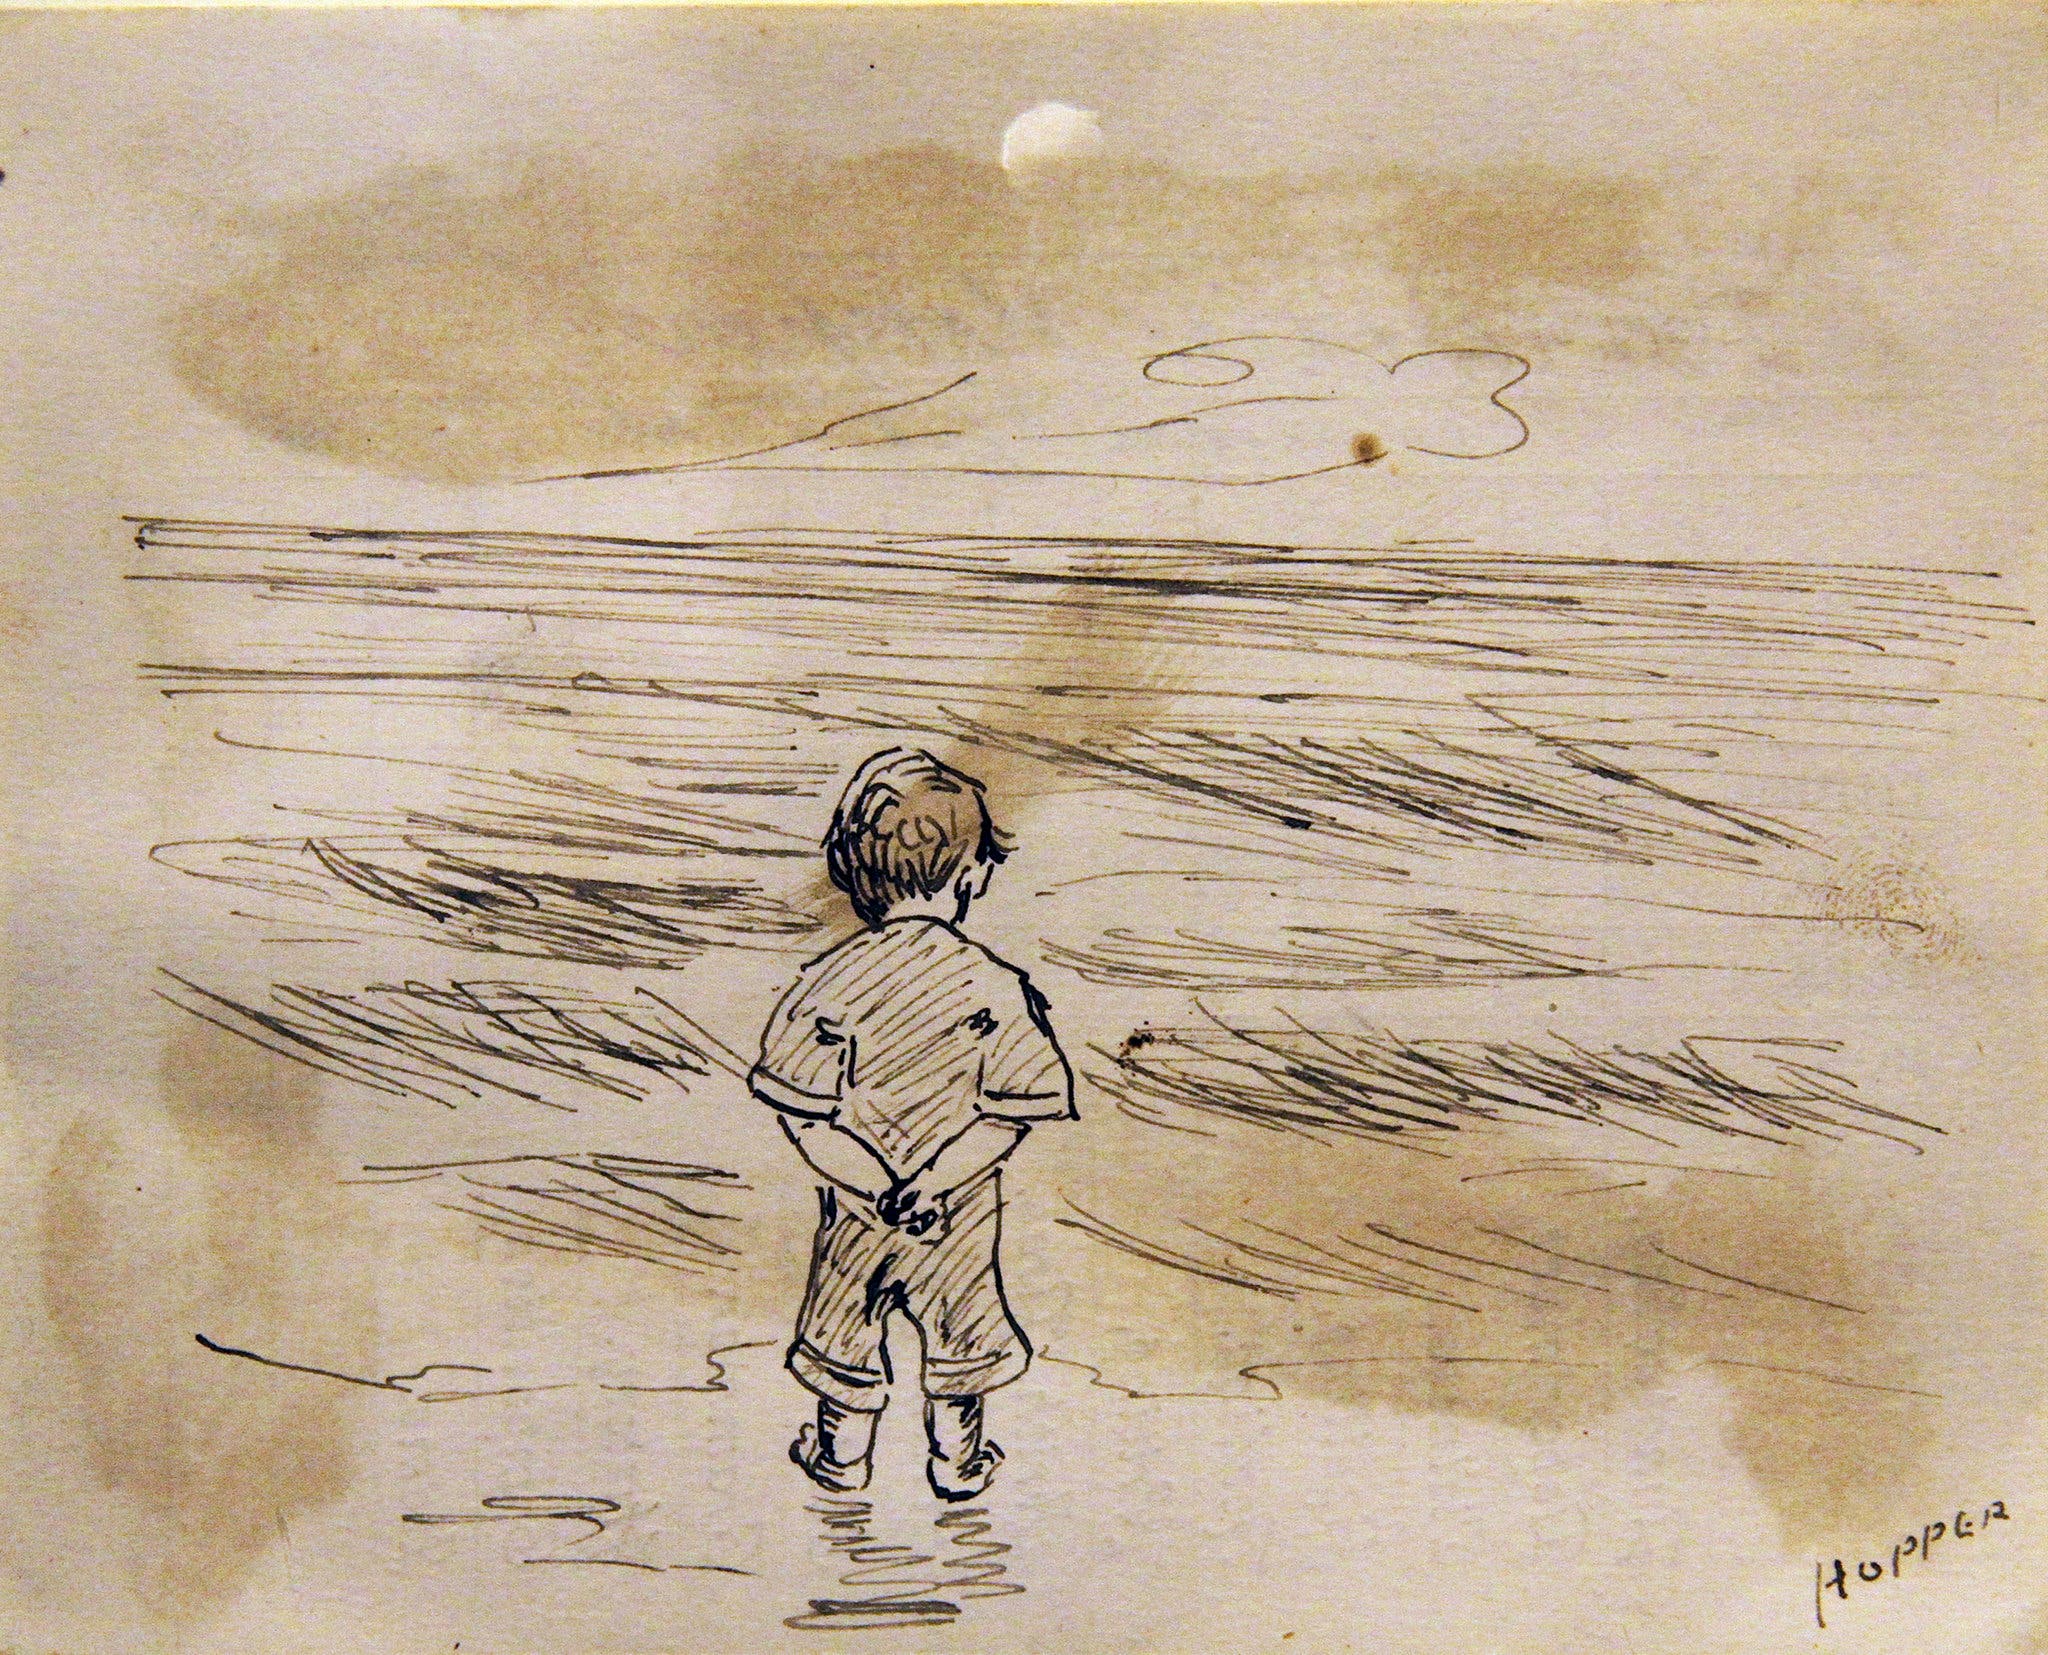 Bambino che osserva il mare by Edward Hopper - 1891 - 11,43 x 8,89 cm collezione privata